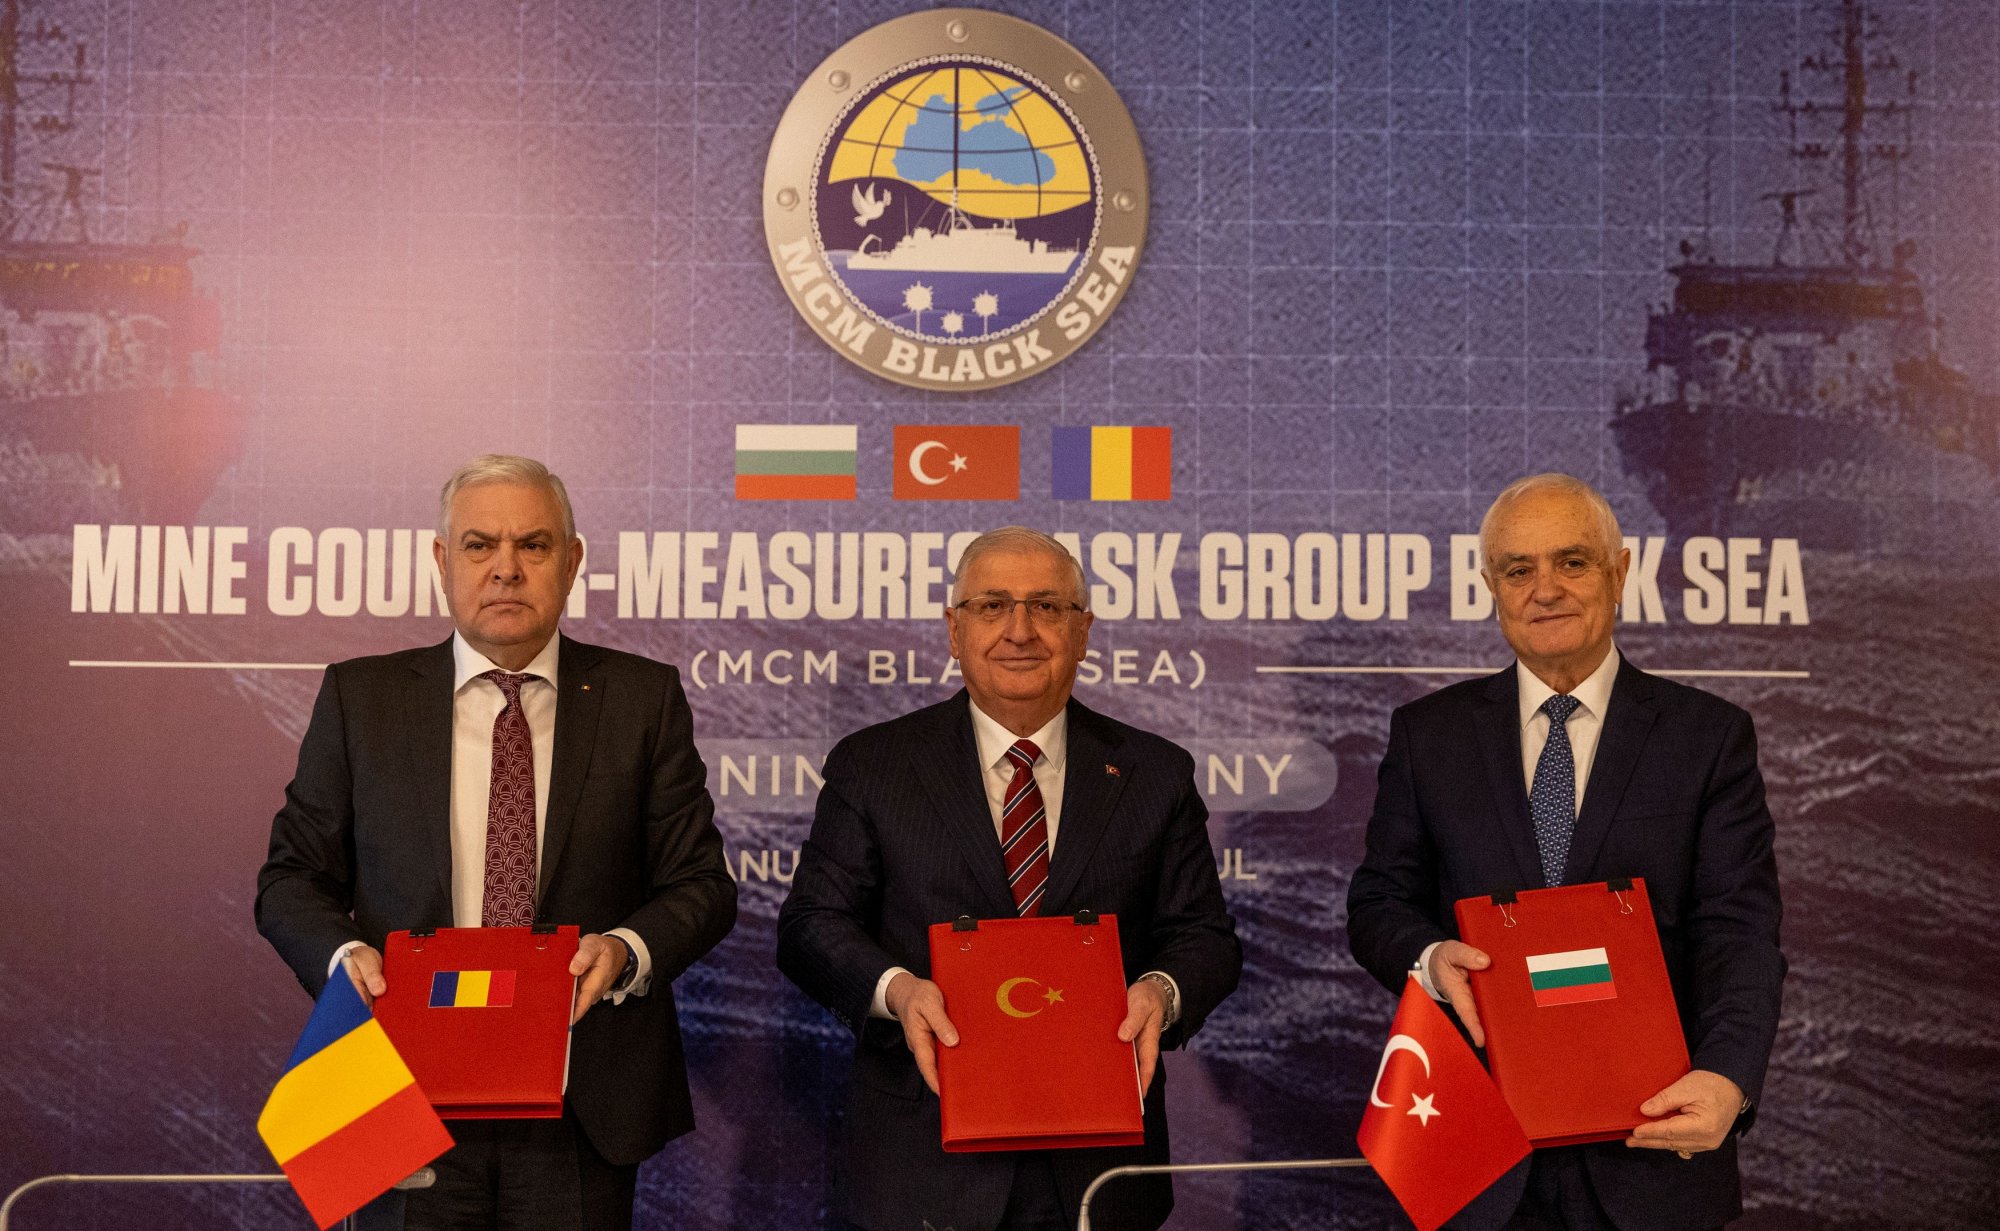 Υπεγράφη σχέδιο εξουδετέρωσης ναρκών στη Μαύρη Θάλασσα - Ποιες χώρες συμμετέχουν